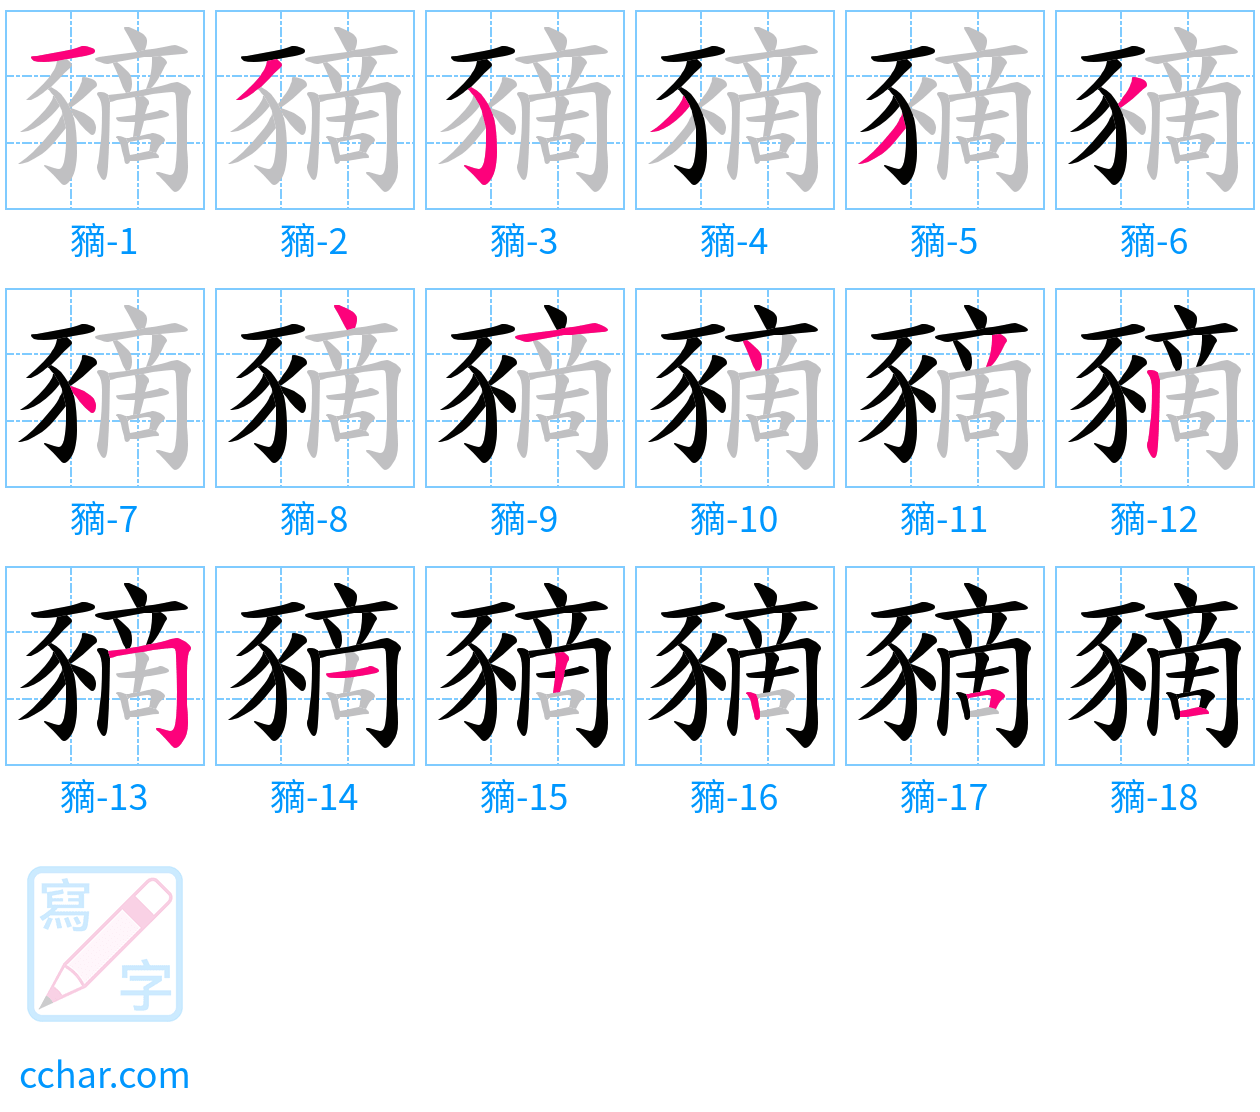 豴 stroke order step-by-step diagram